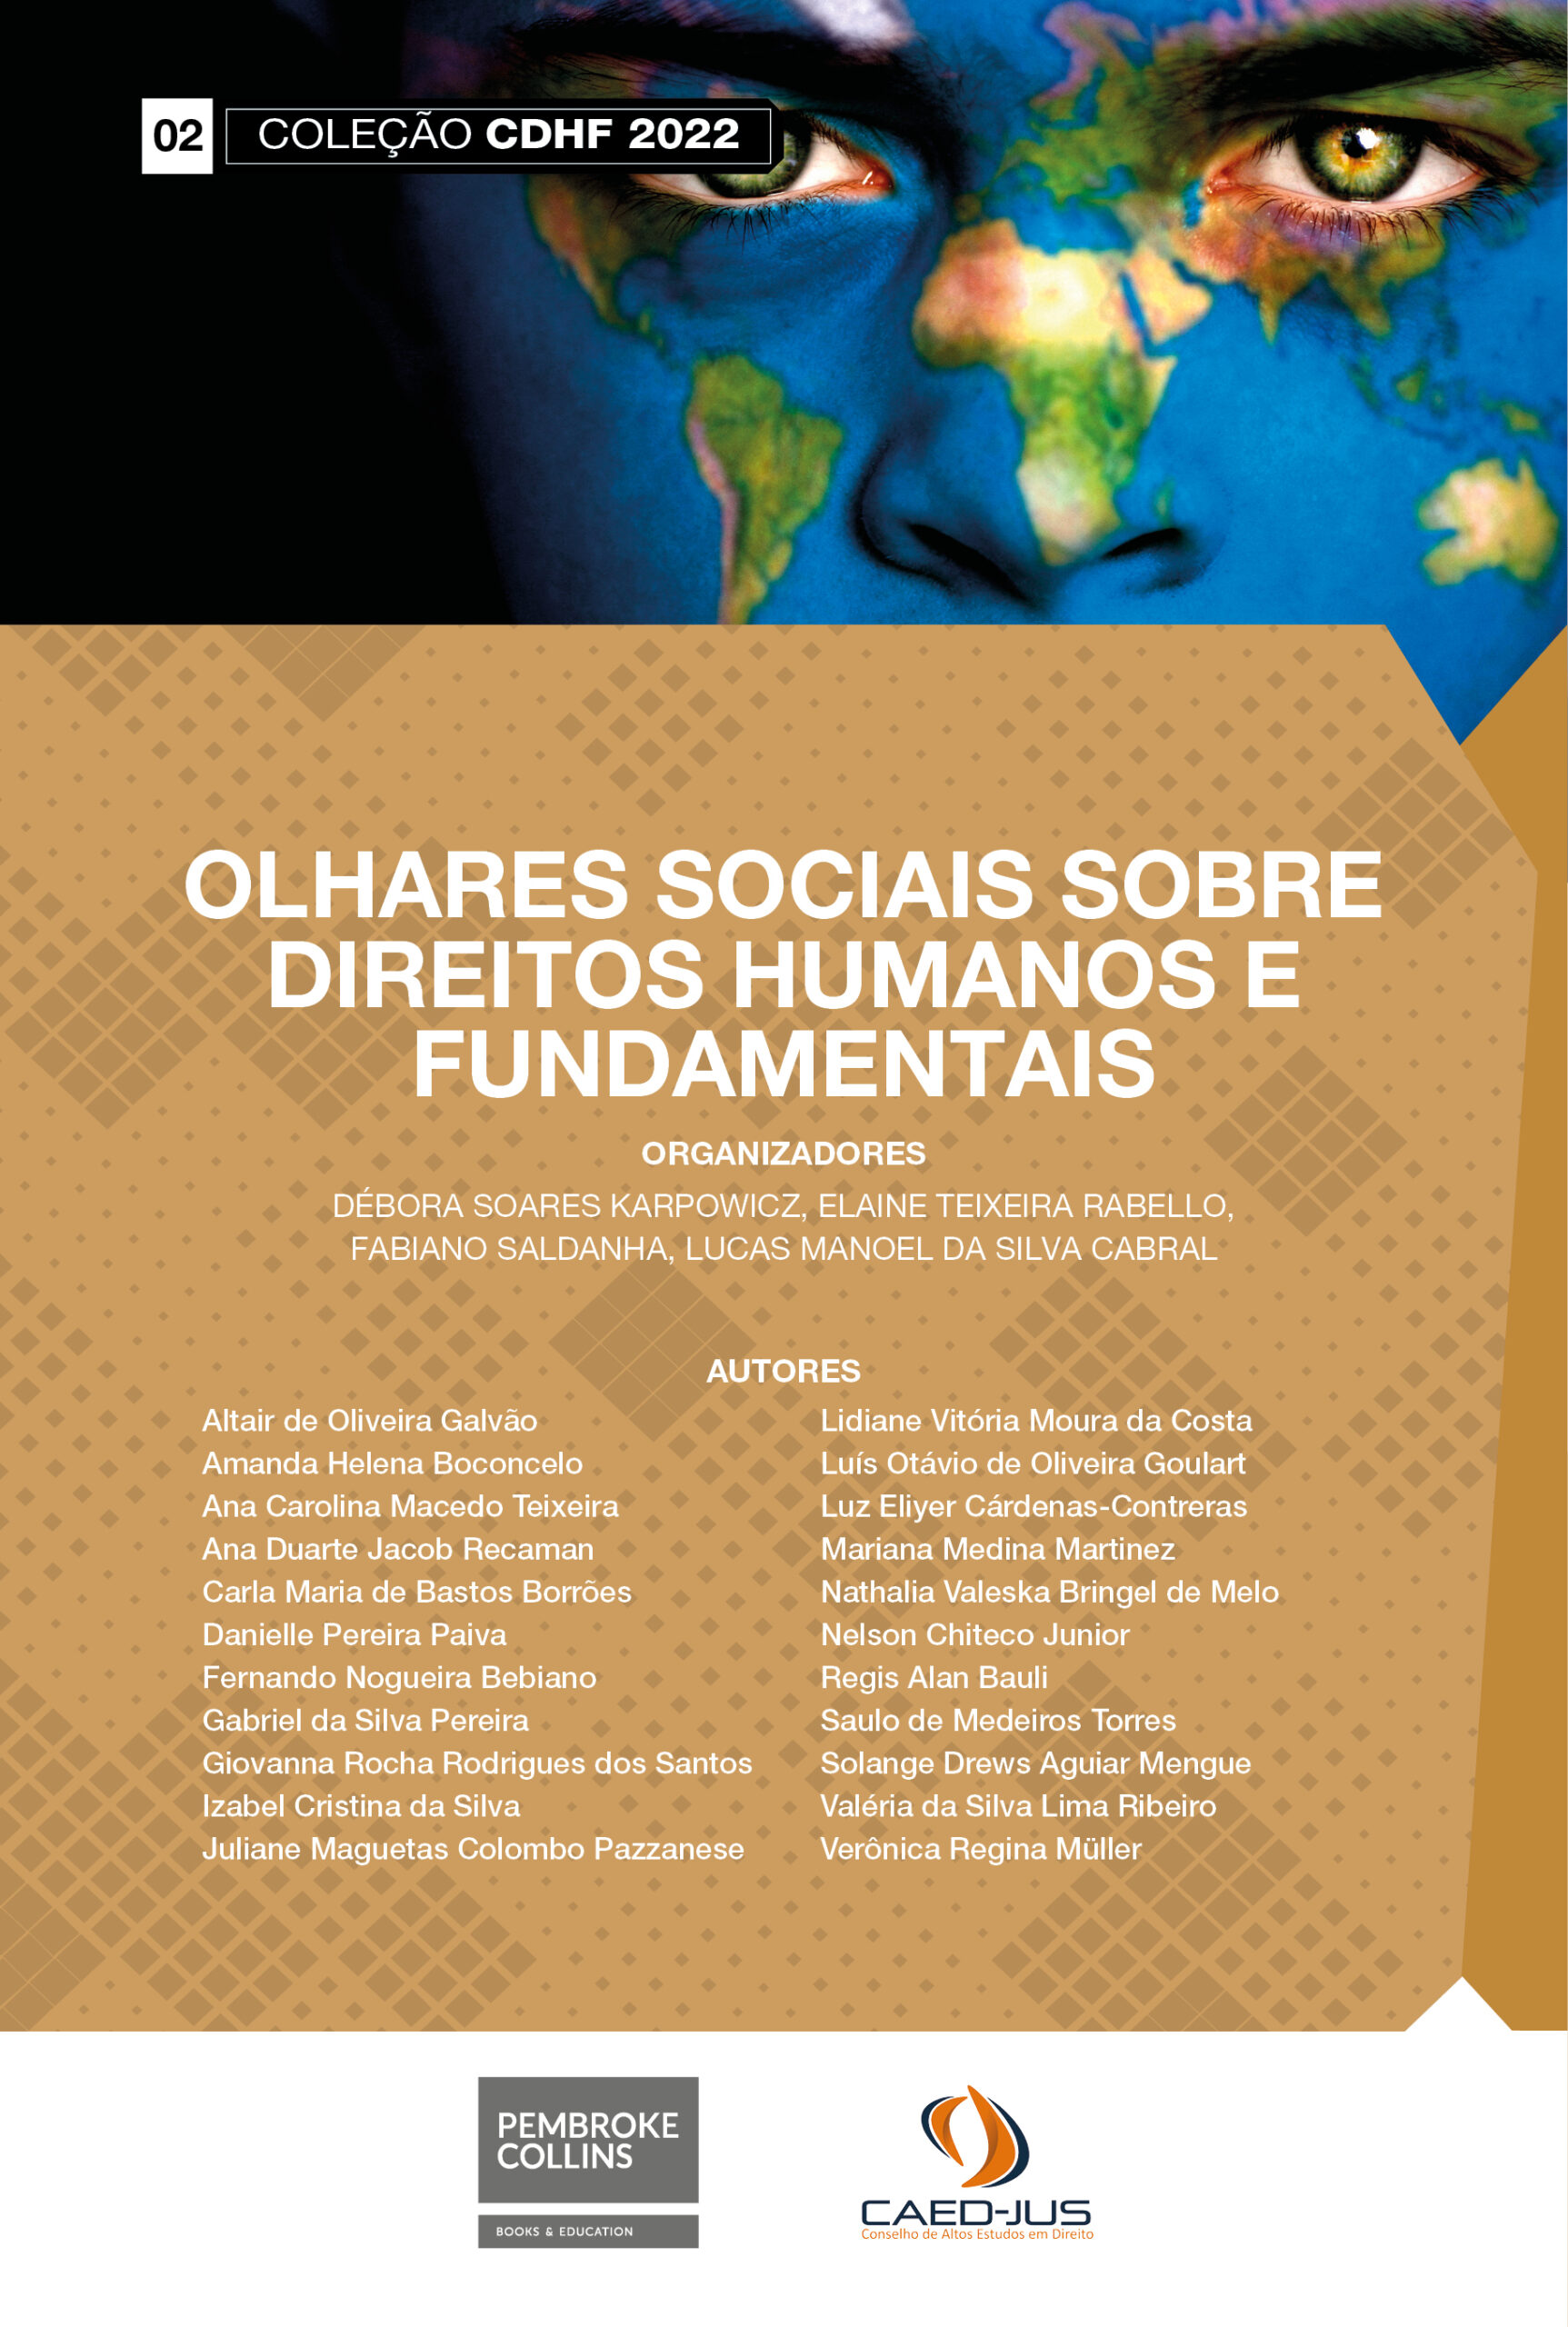 02-CAPA-CDHF2022-OLHARES-SOCIAIS-SOBRE-DIREITOS-HUMANOS-E-FUNDAMENTAIS